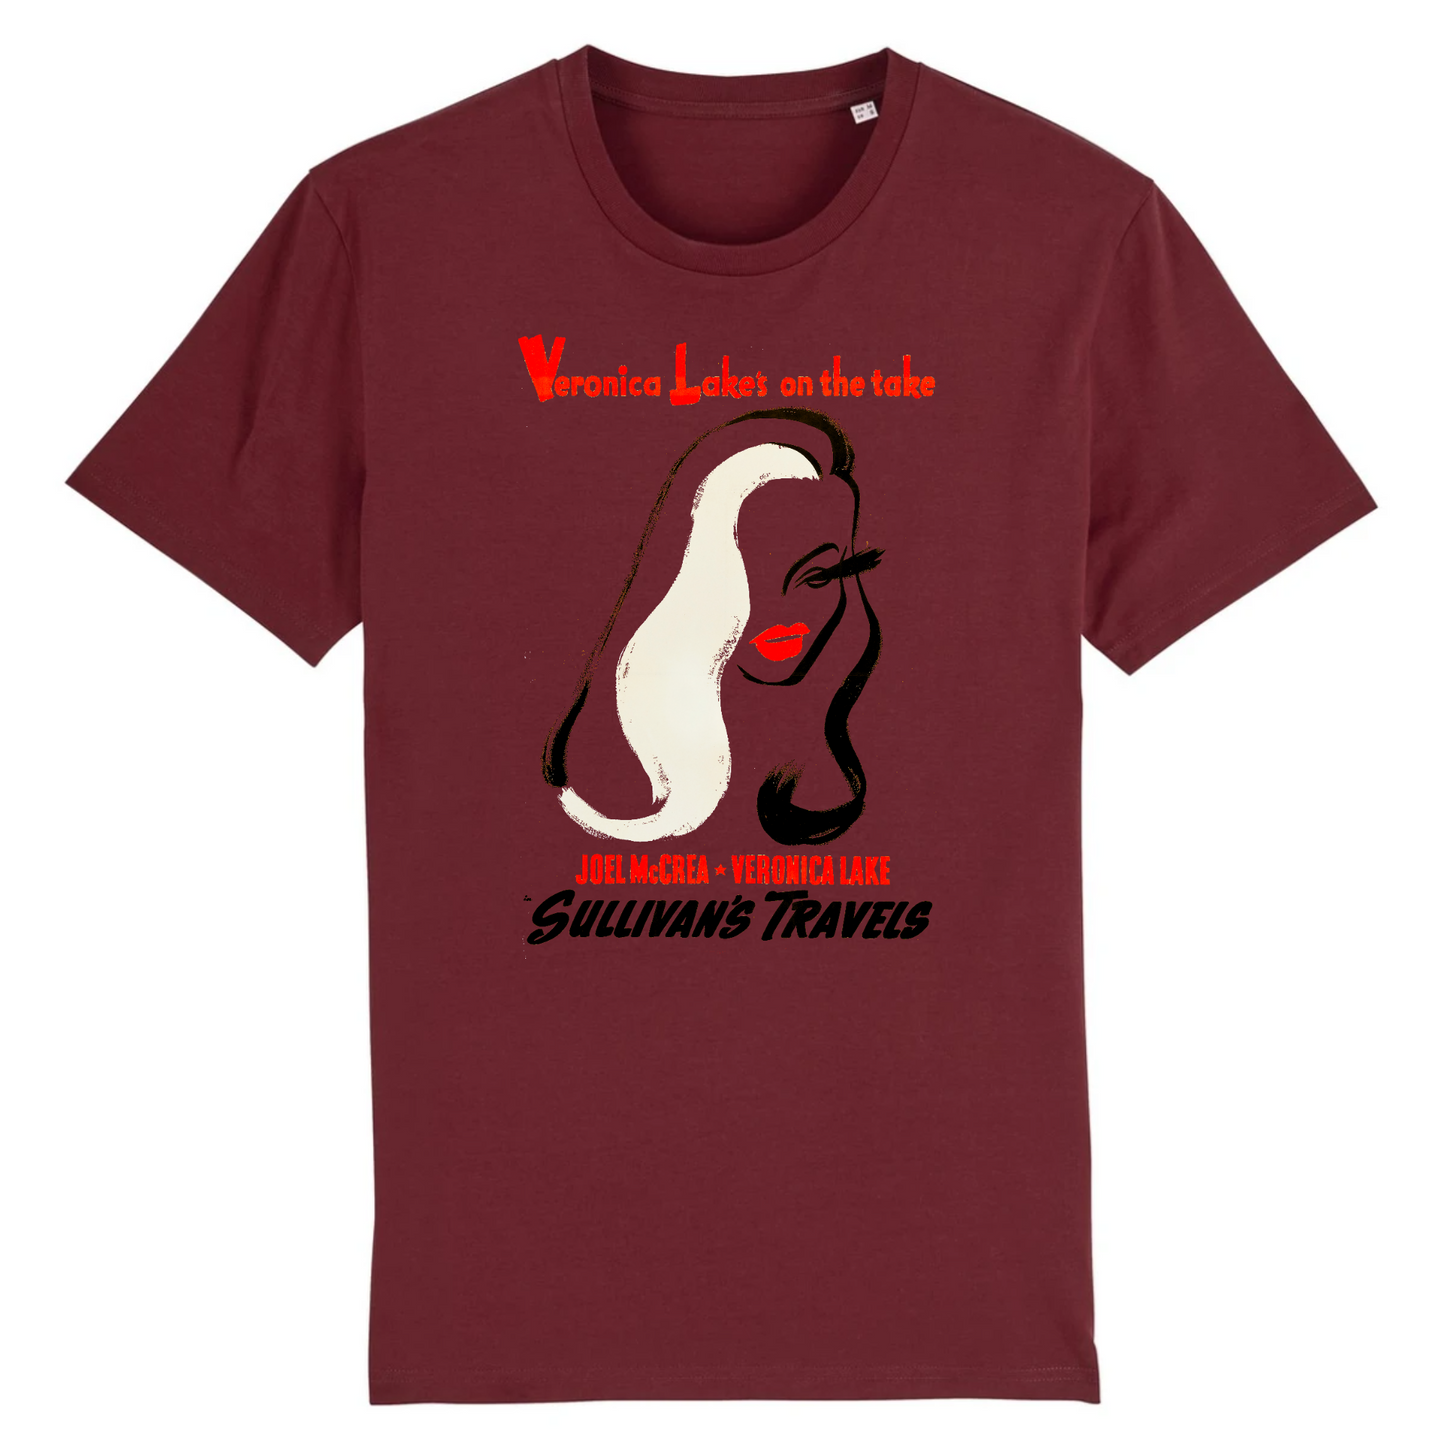 Veronica Lake dans les voyages de Sullivan, 1941 - T-shirt en coton biologique